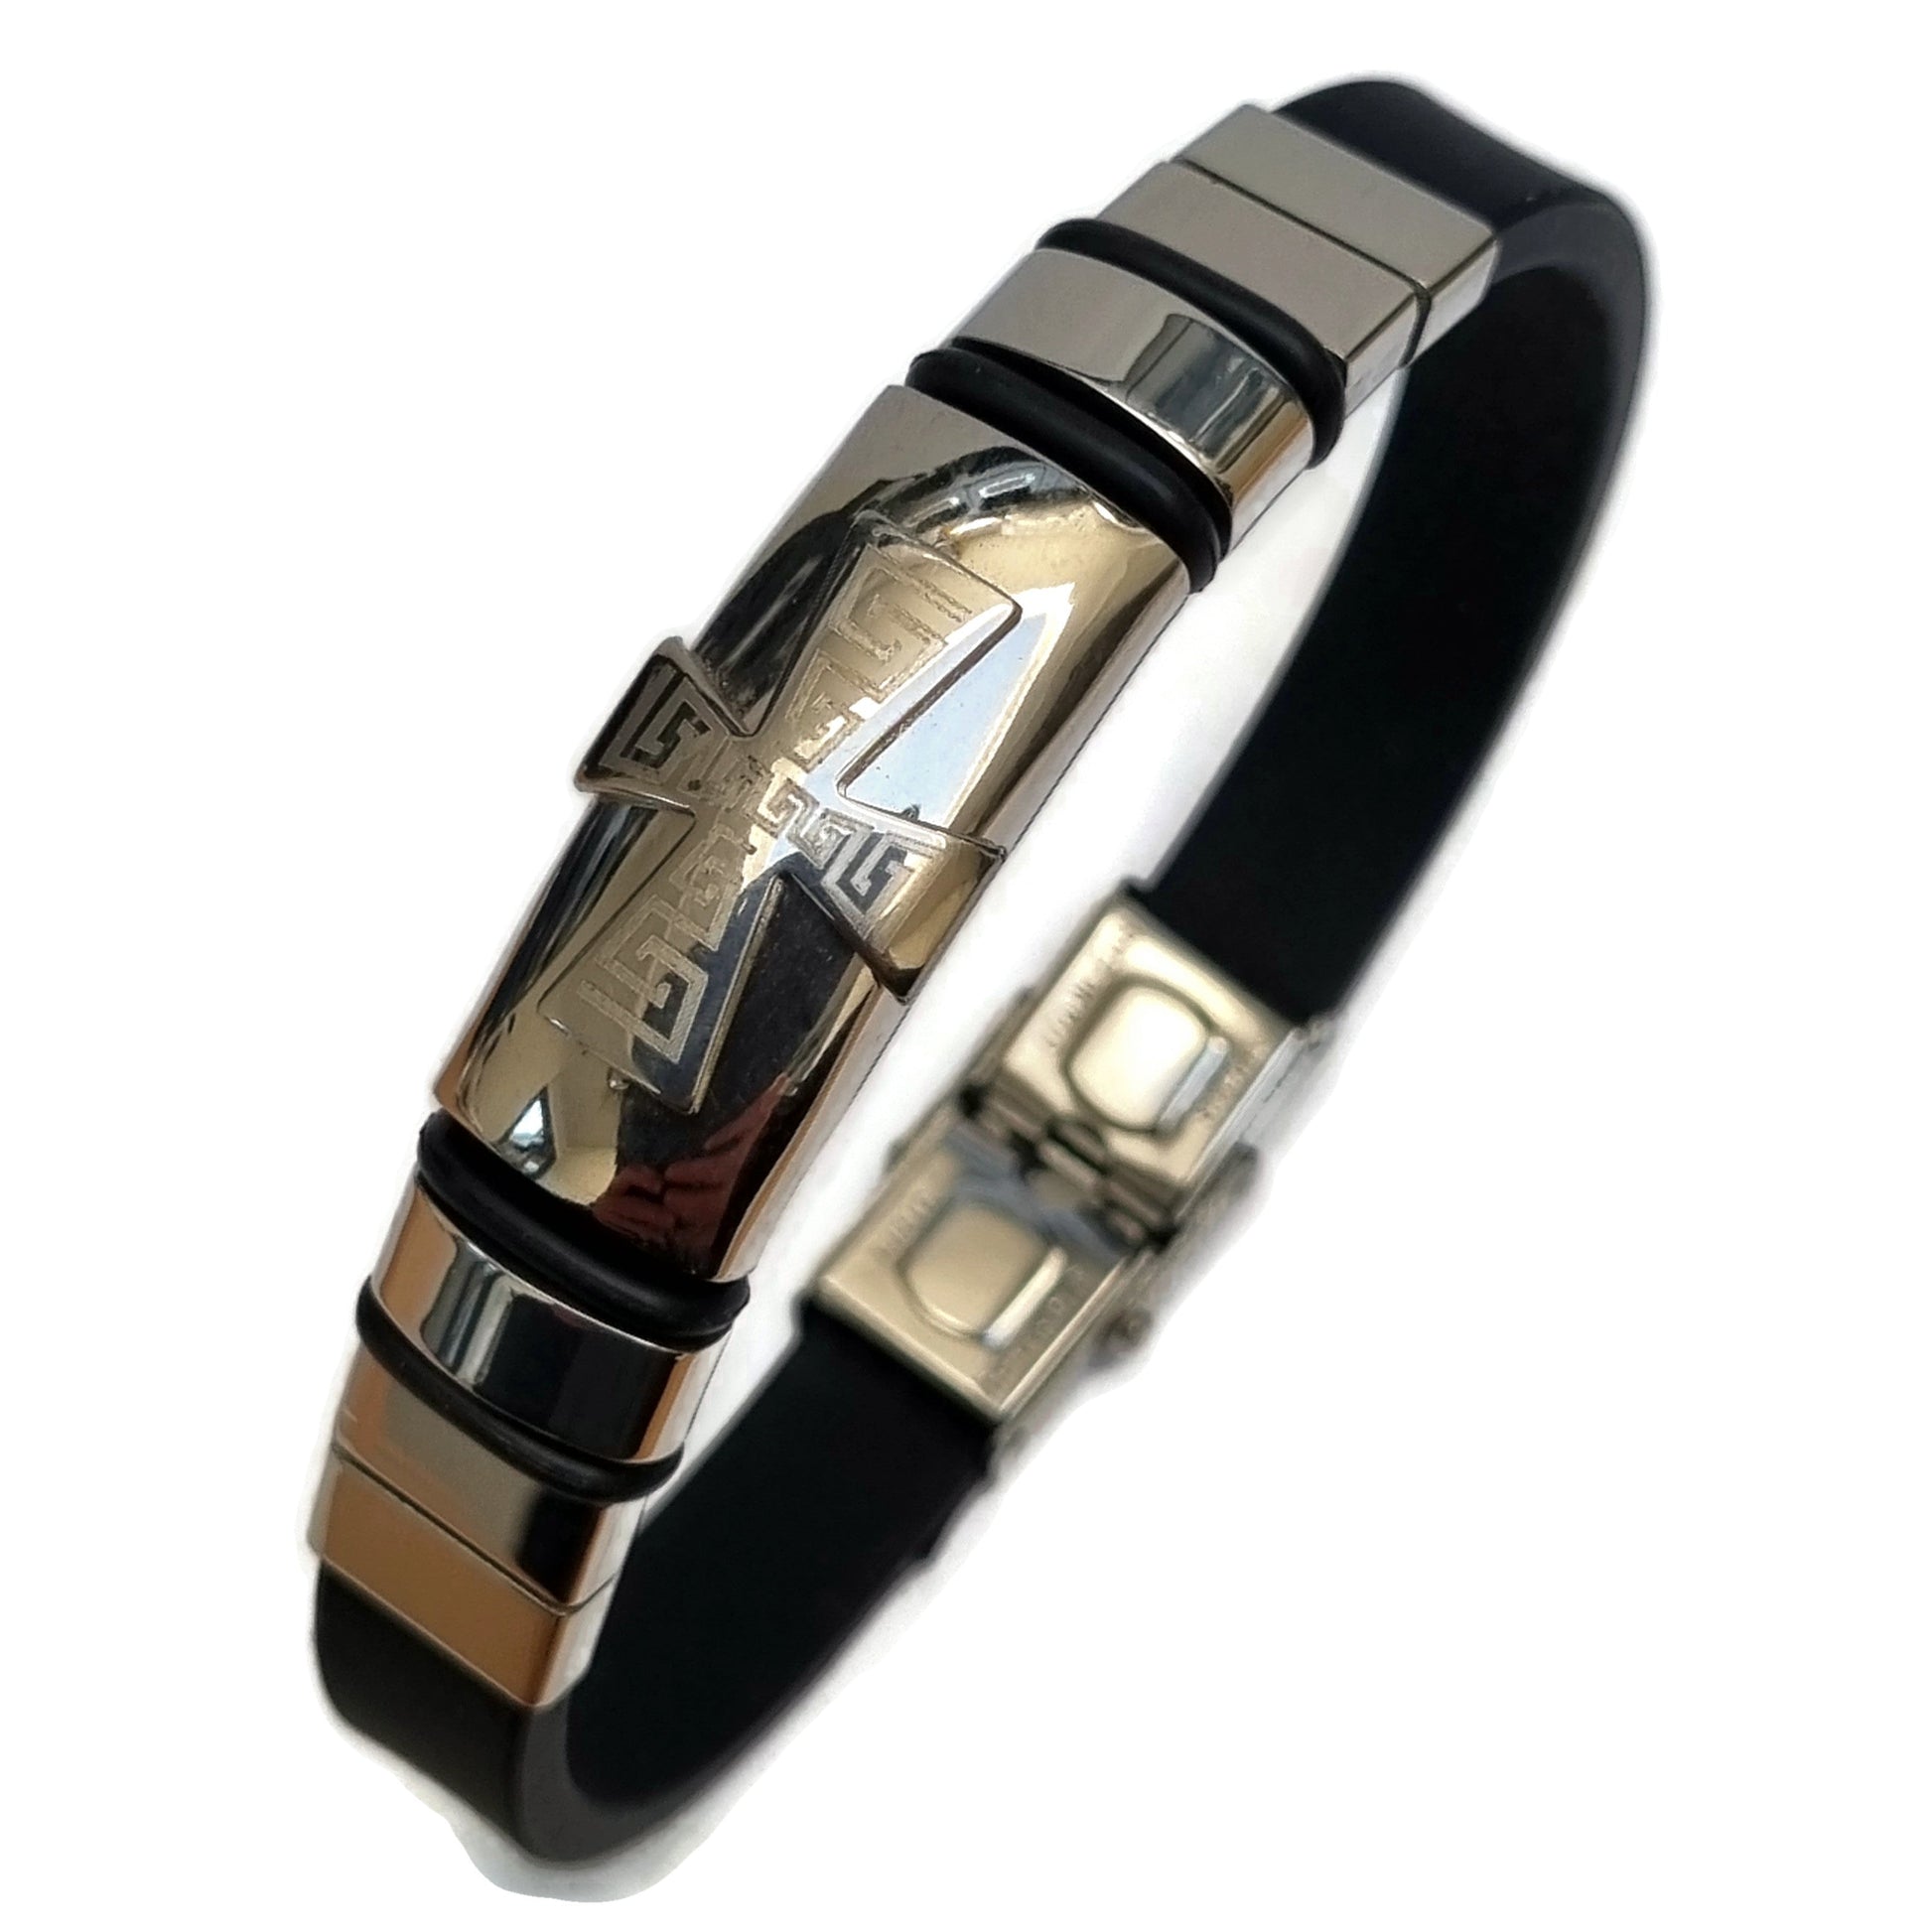 Zwarte Leren Armband Met Zilveren Sluiting - Siliconen Armband Kruis Met Stalen Accenten 20cm